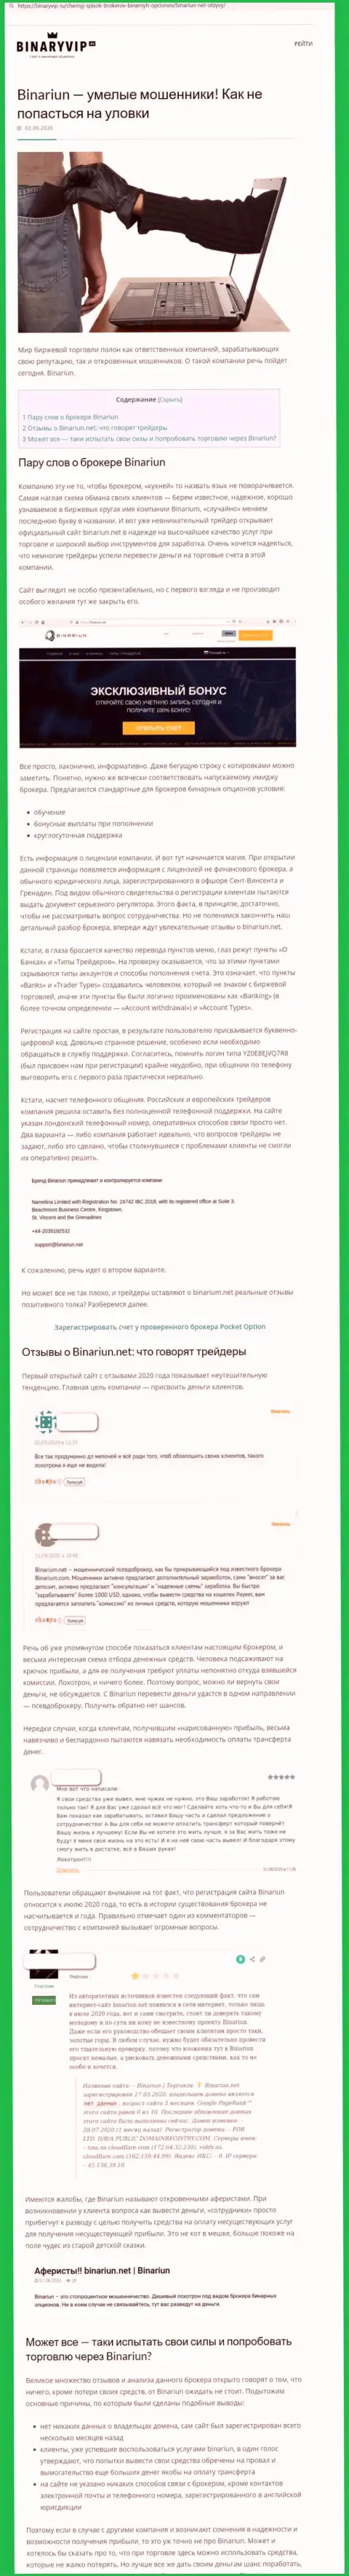 Binariun Net - это ЖУЛИКИ !!! Схемы неправомерных уловок и точки зрения пострадавших